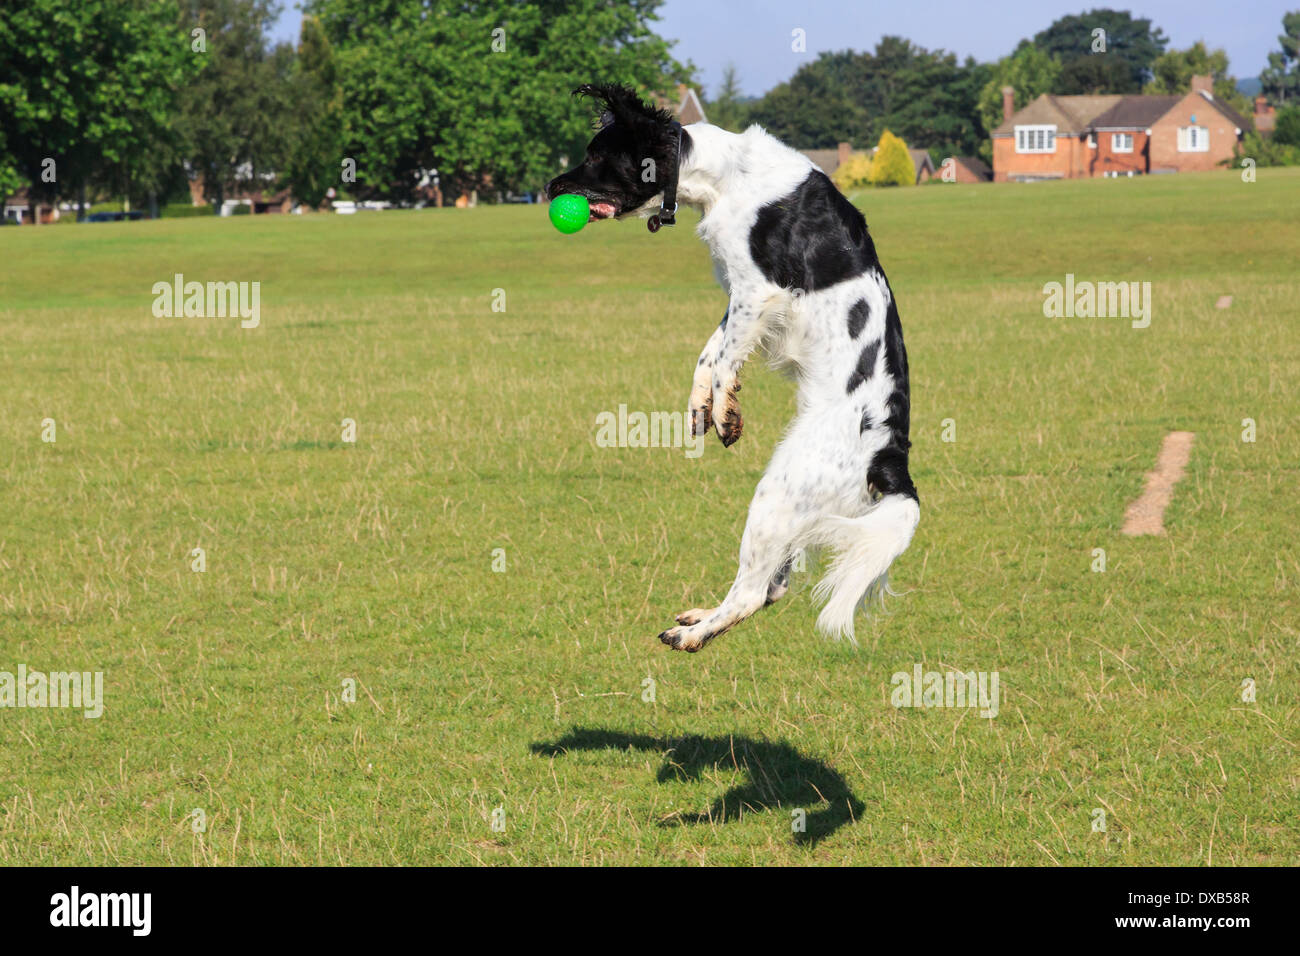 Blanco y Negro Perro Springer Spaniel Inglés saltar en el aire para atrapar una pelota en el parque. Inglaterra, Reino Unido, Gran Bretaña Foto de stock